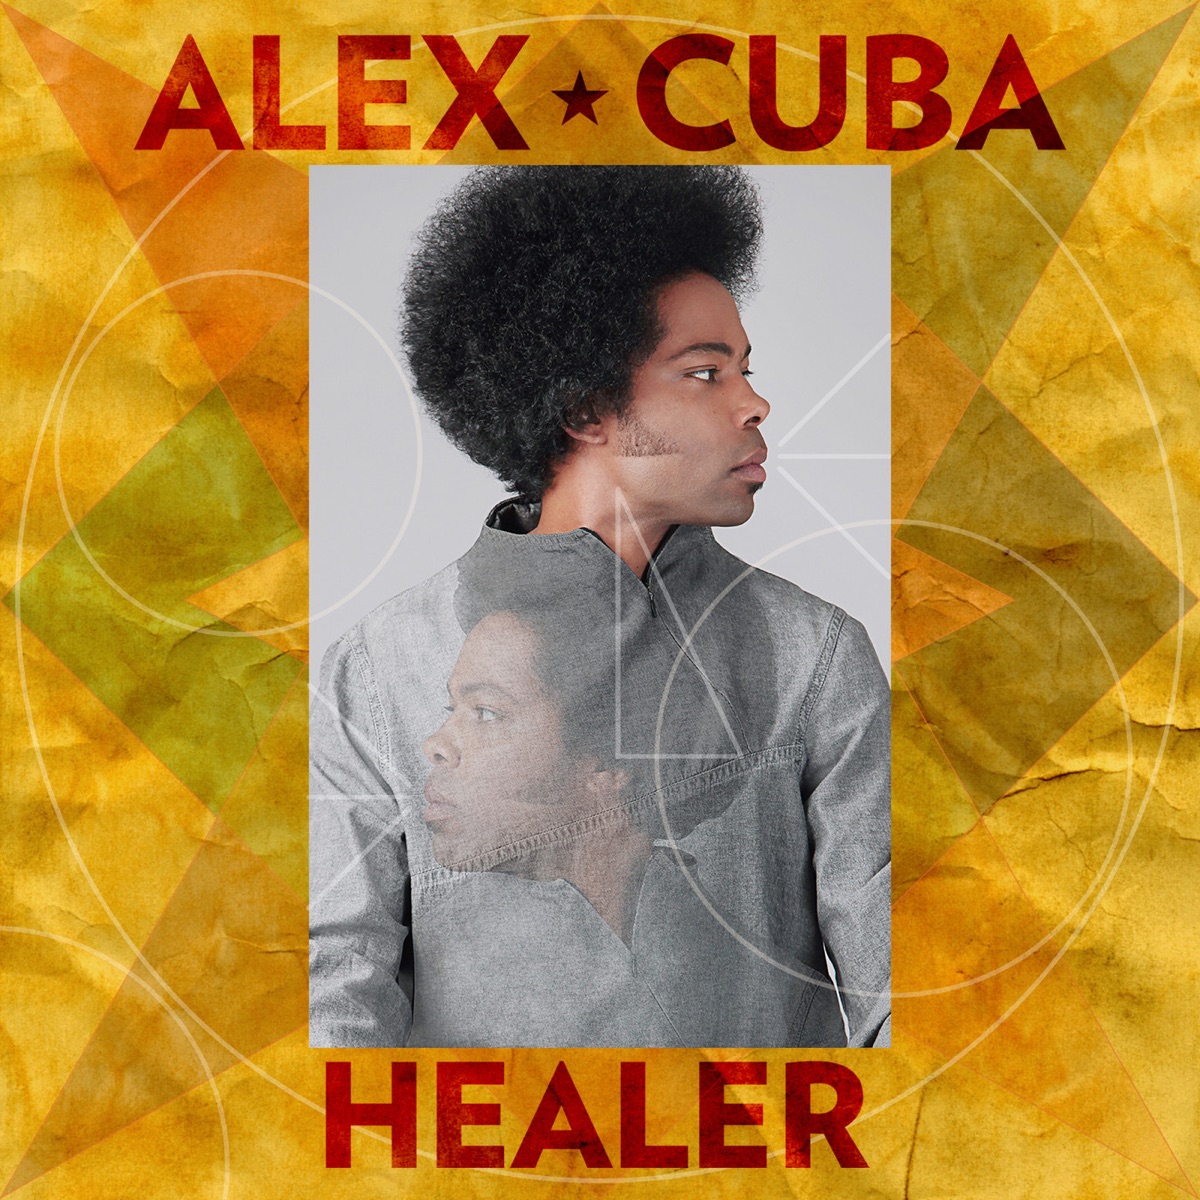 Healer by Alex Cuba on Apple Music